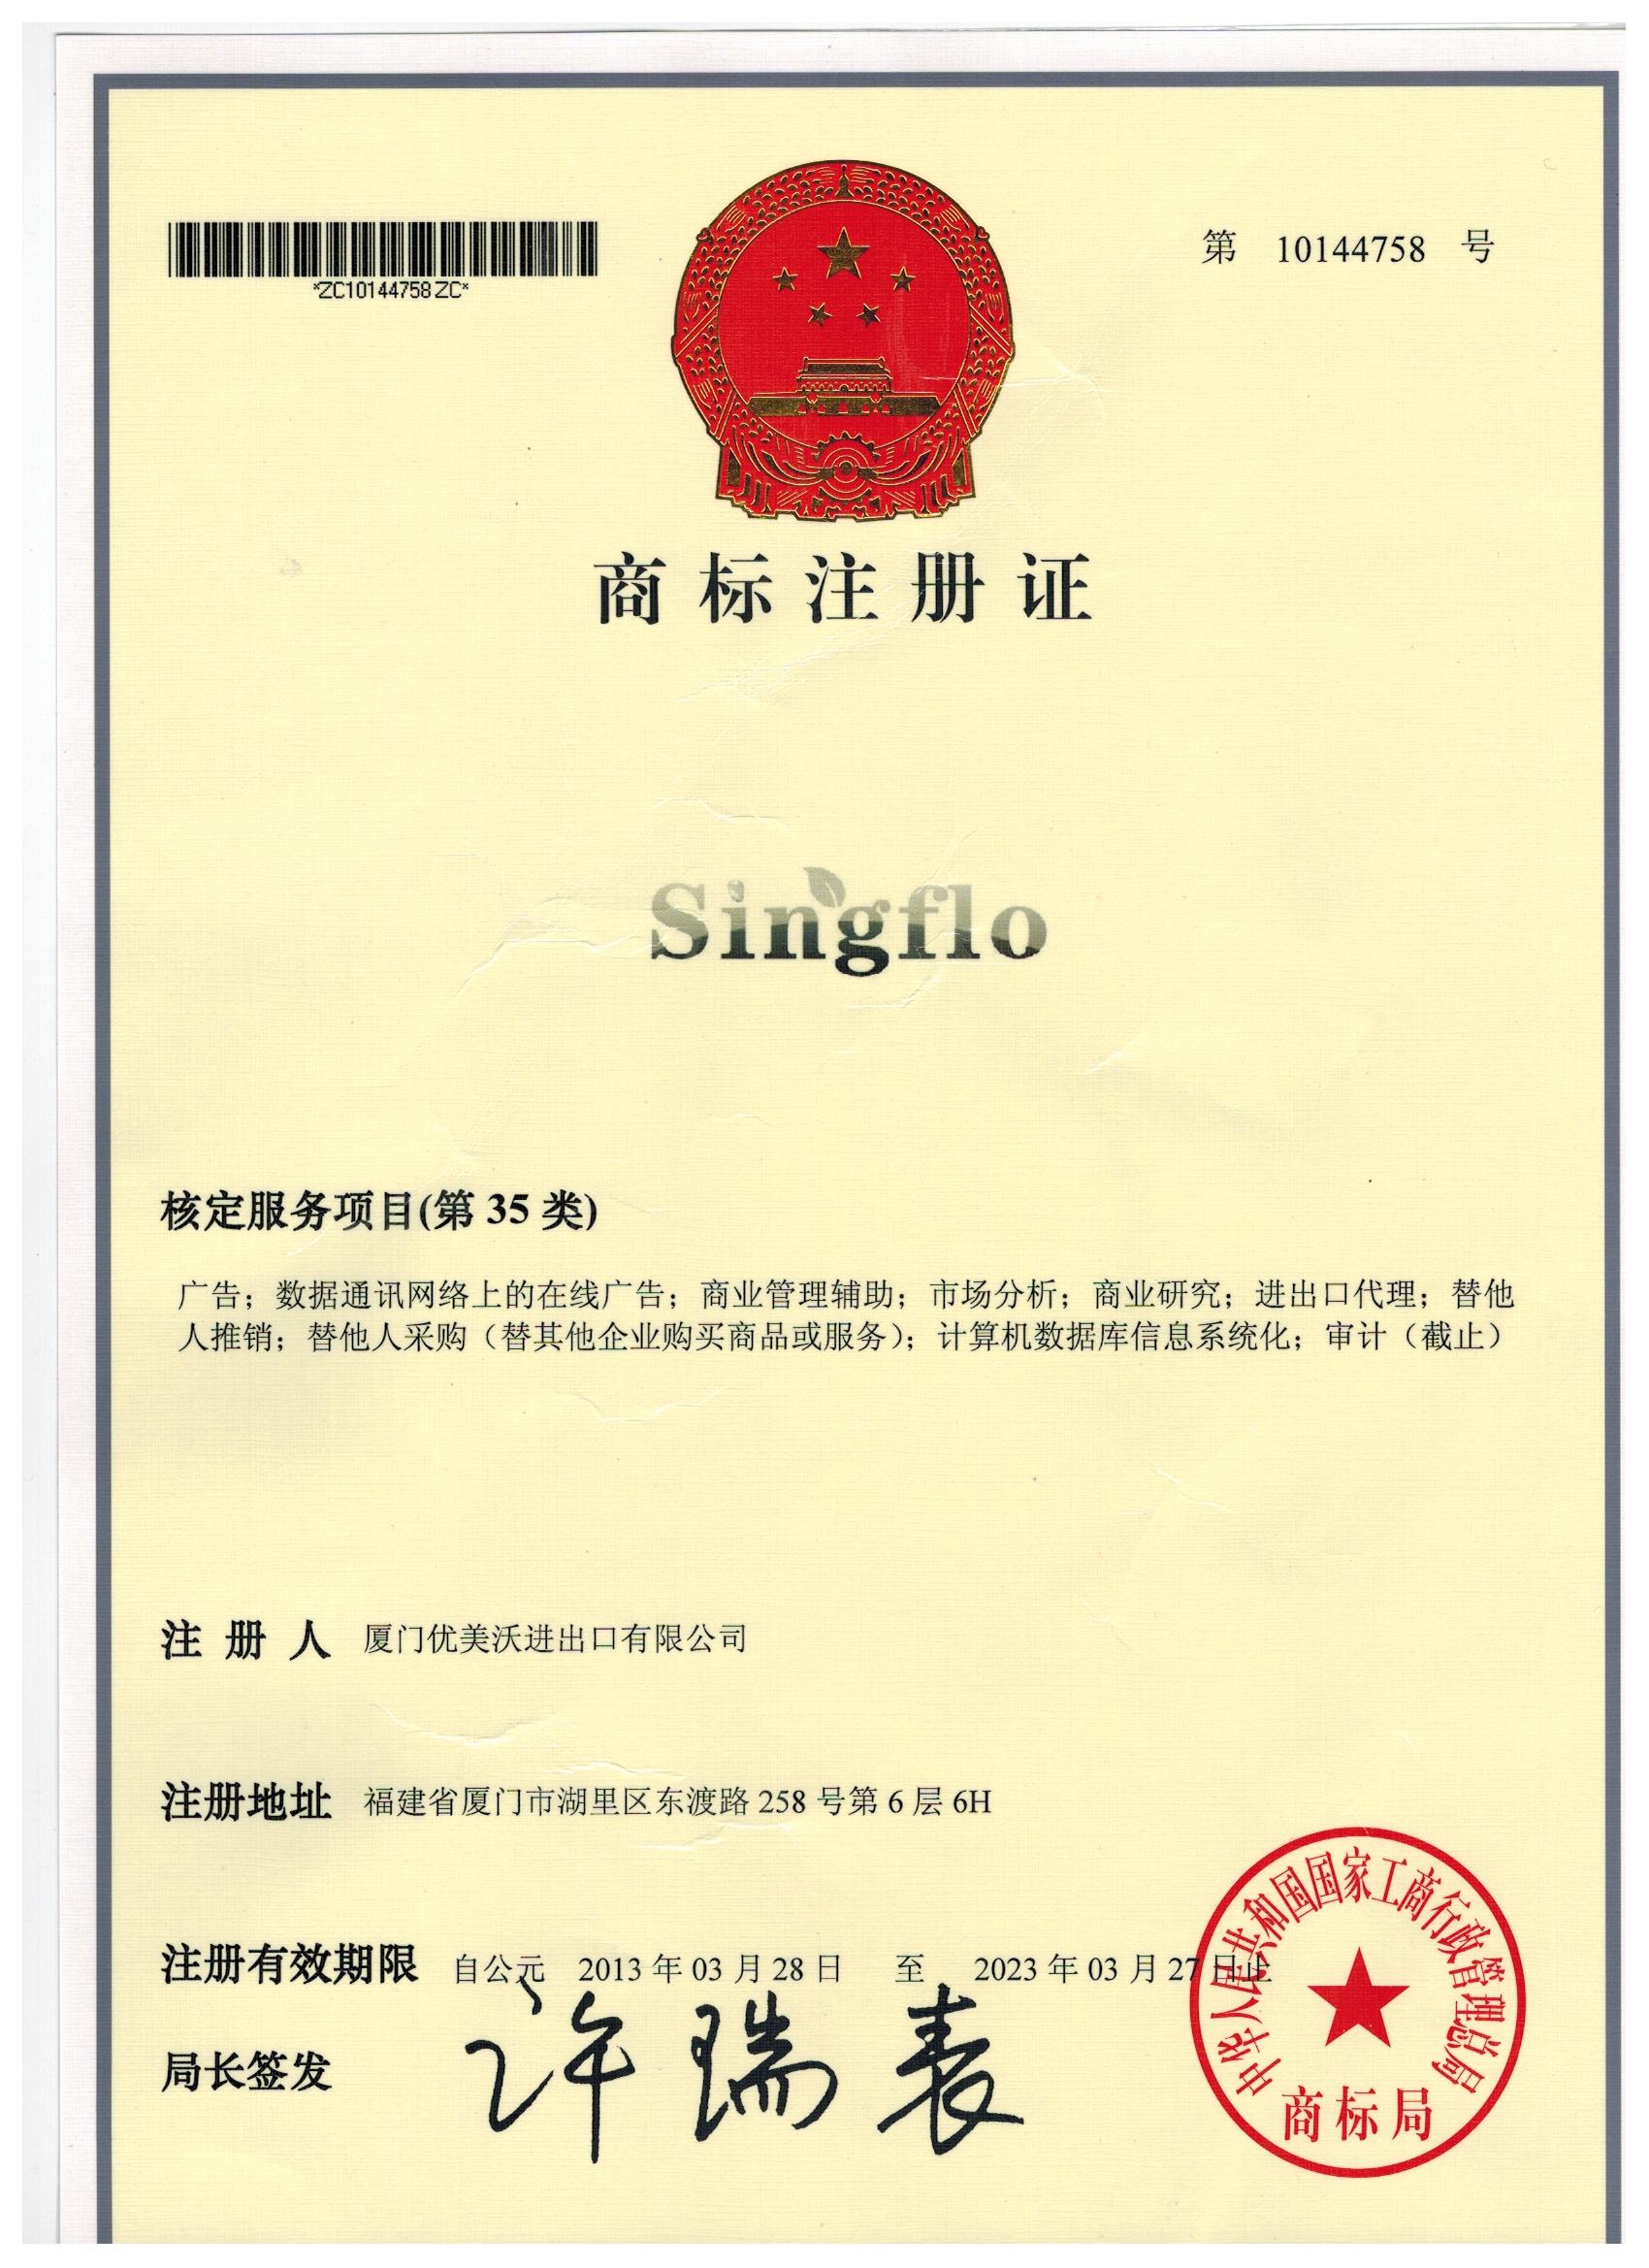 Singflo Trade Mark